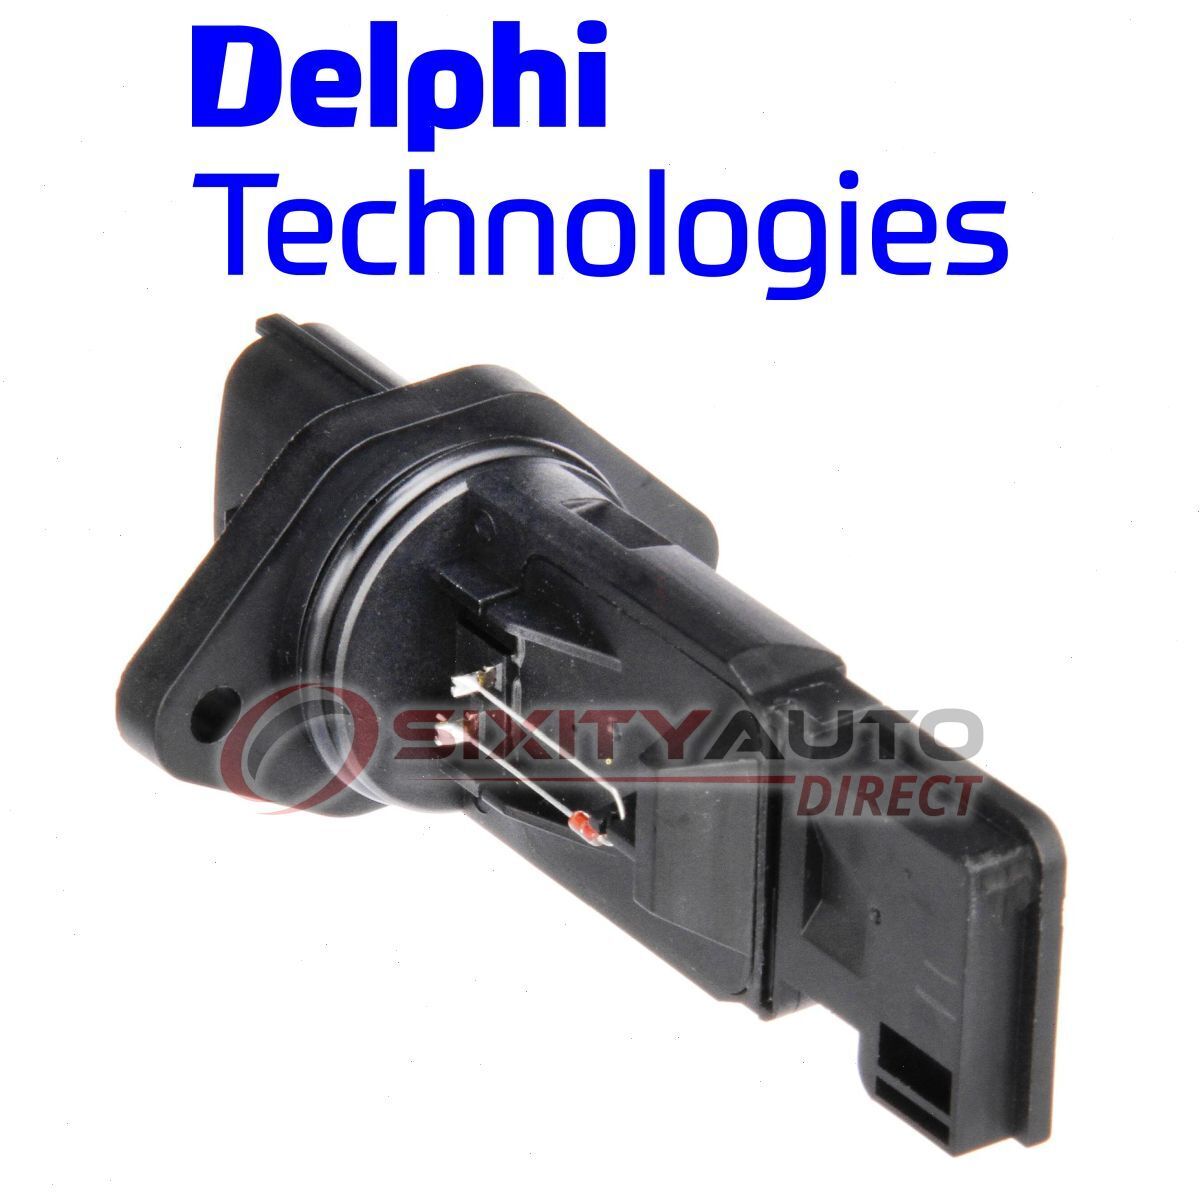 Delphi Mass Air Flow Sensor for 2004-2005 Porsche Carrera GT 5.7L V10 Intake sl